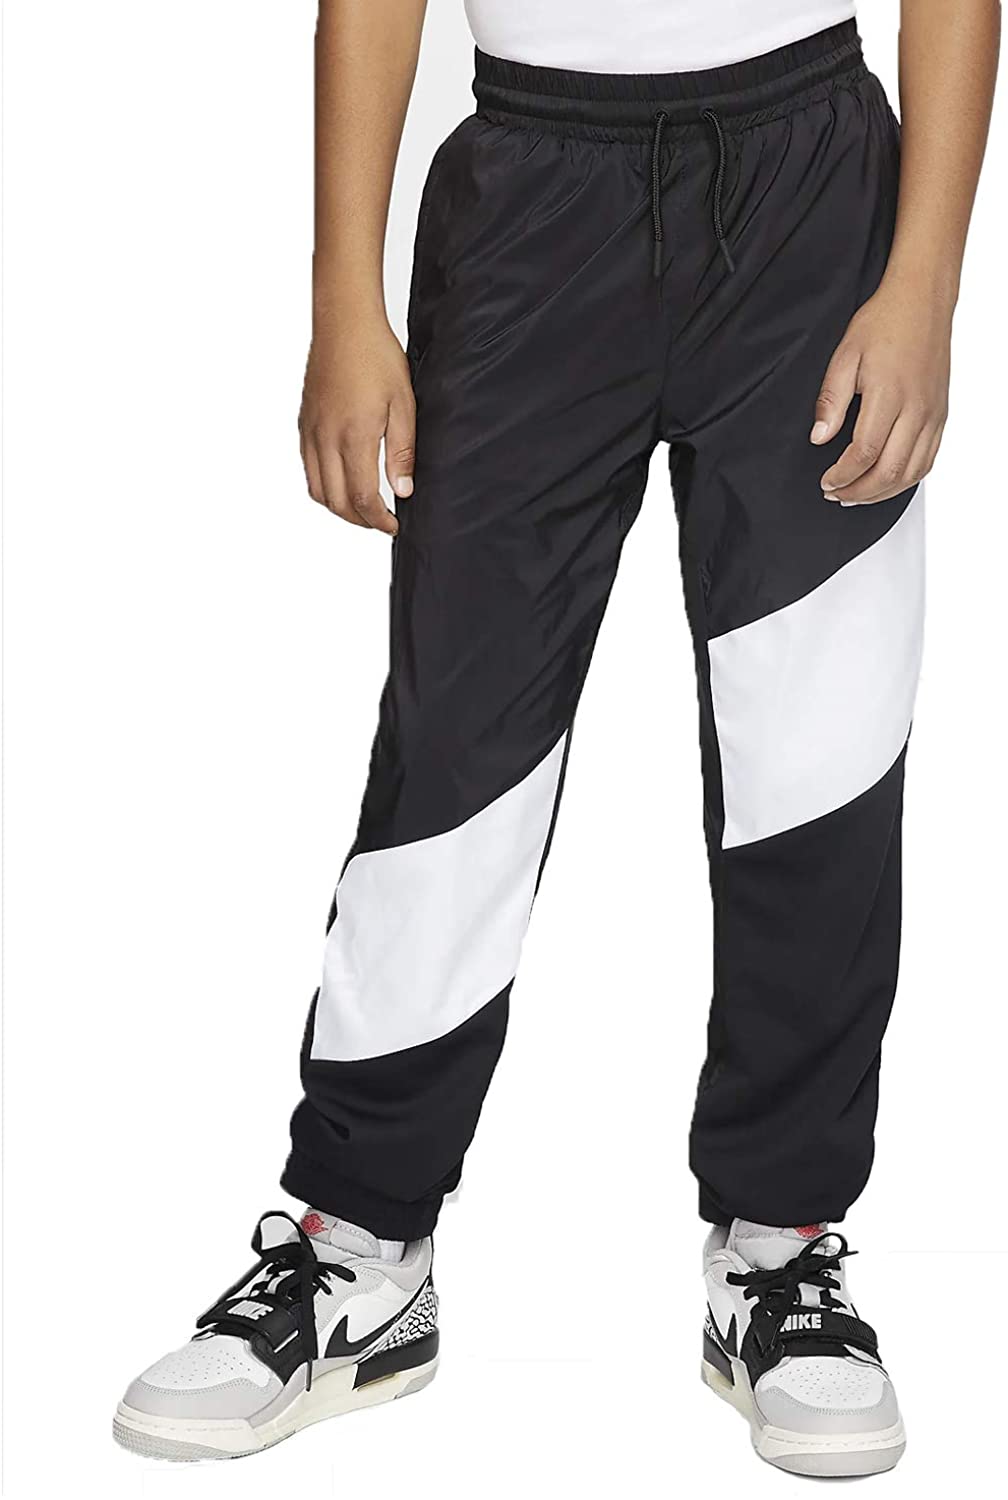 Nike Boys Jordan Wings Sideline Athletic Pants | eBay